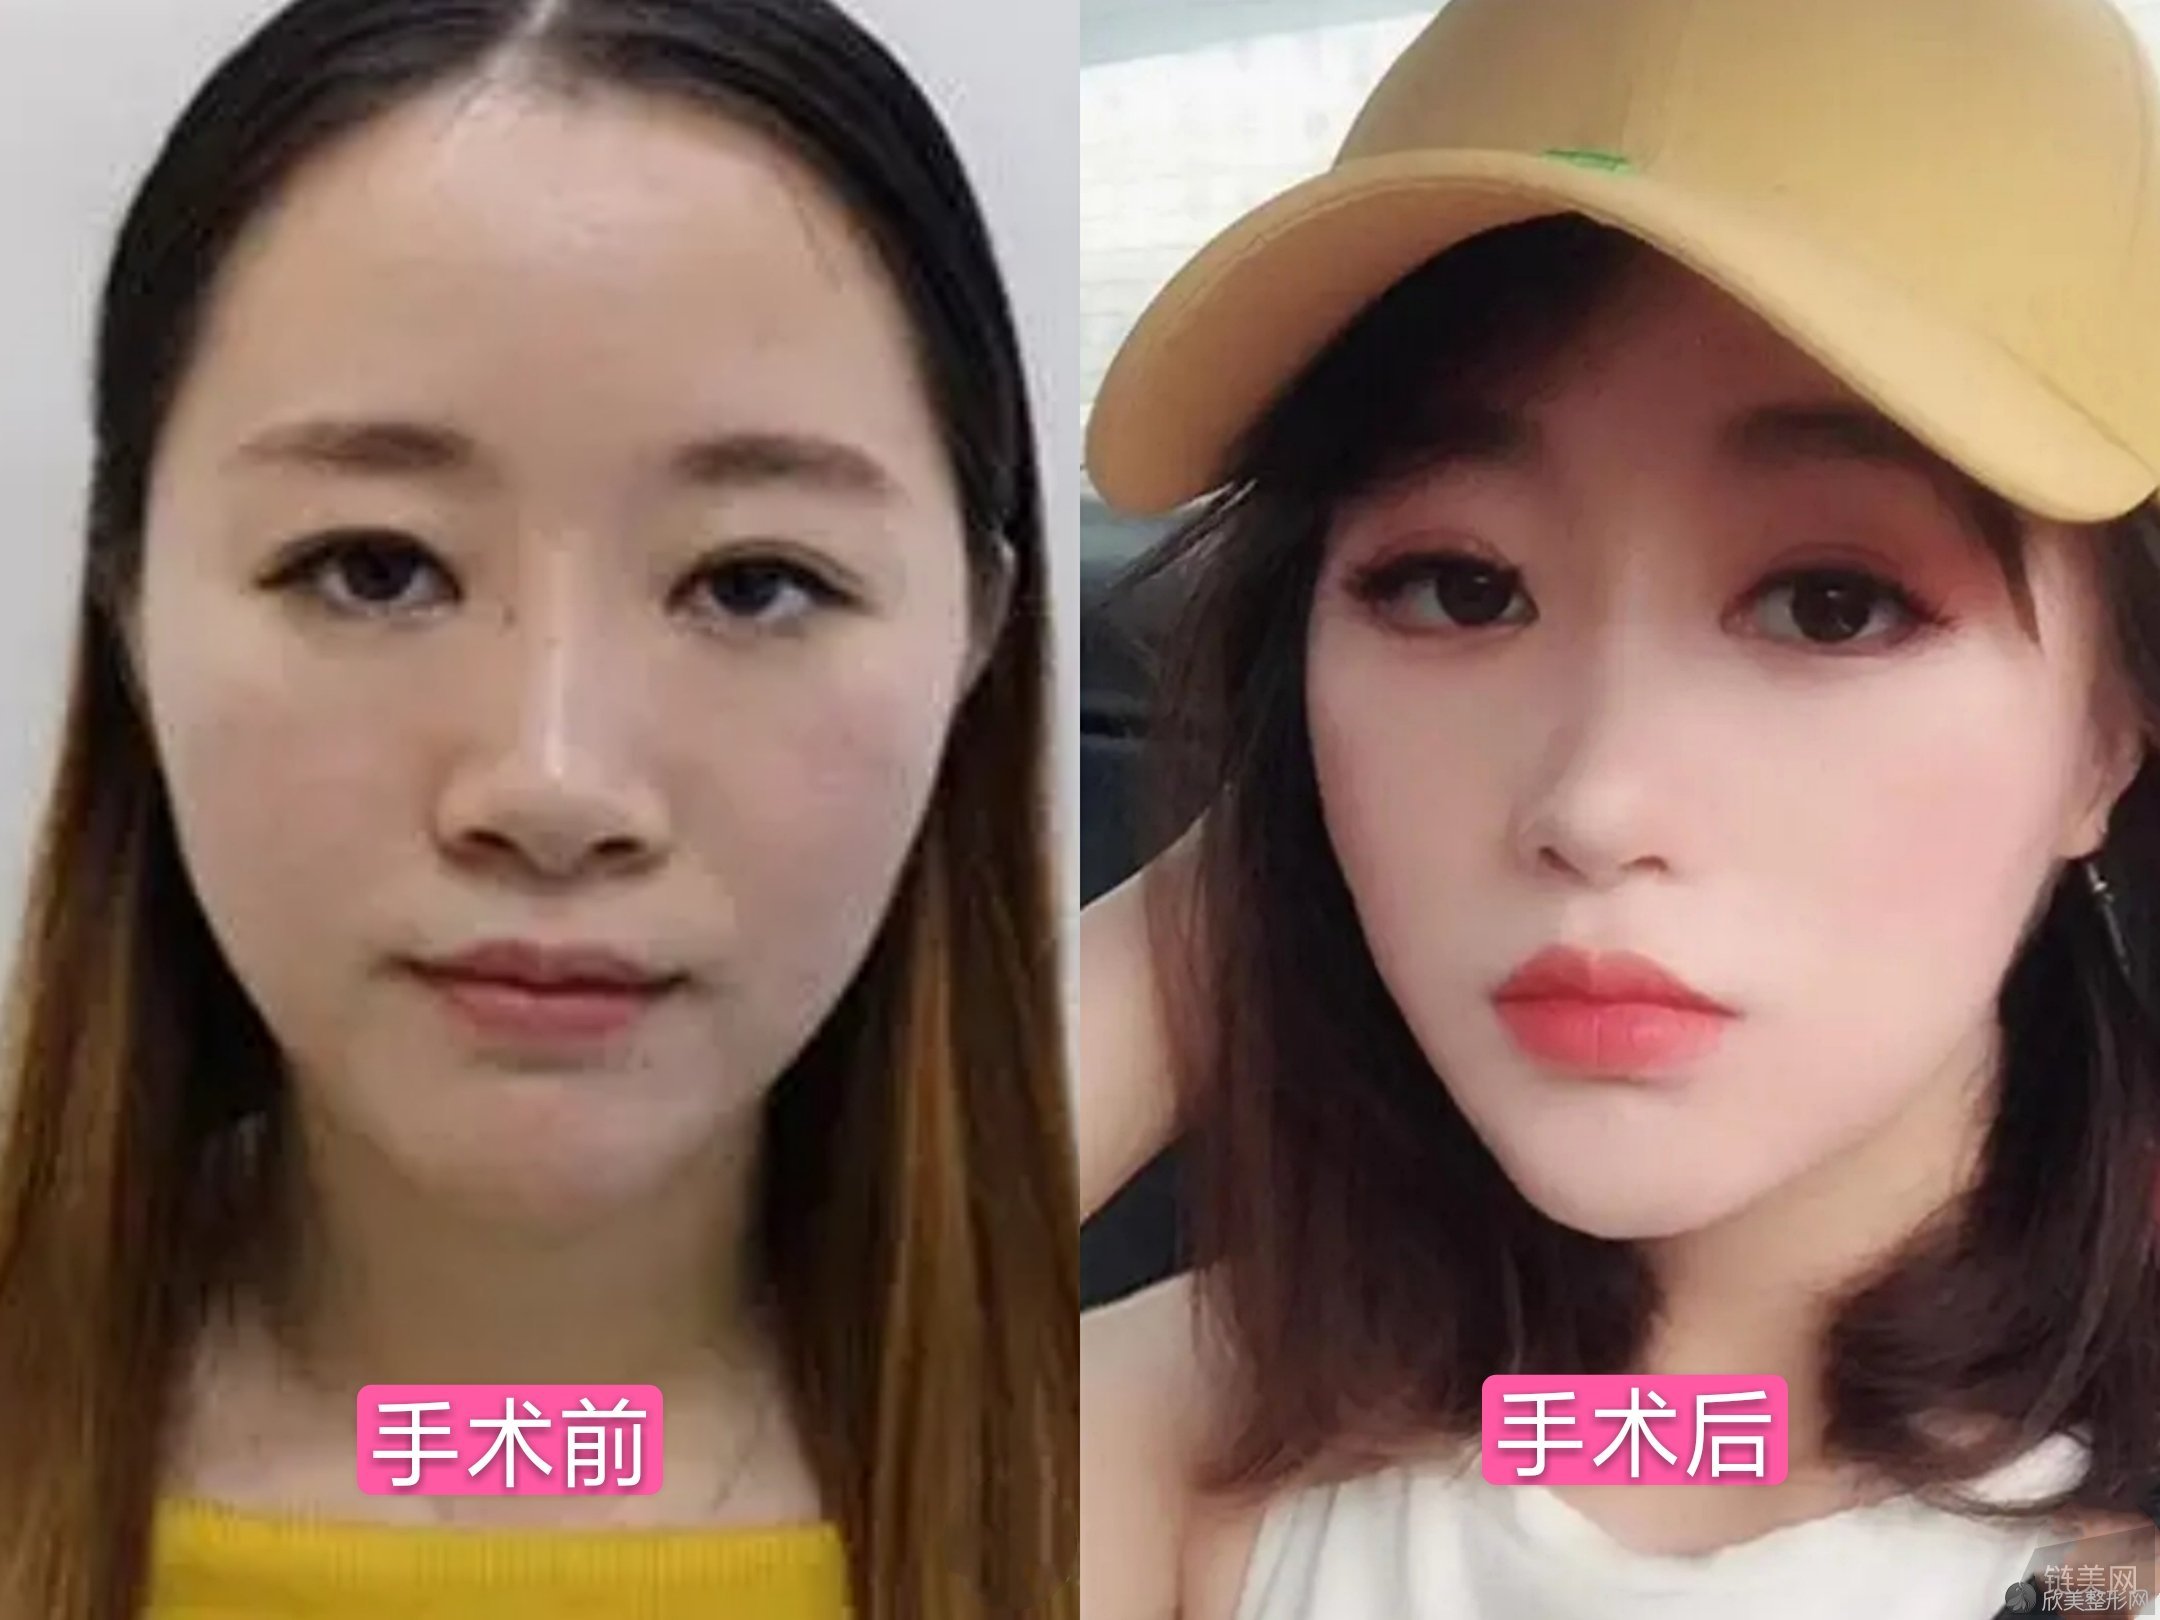 西京整形医院隆鼻案例术前术后对比图